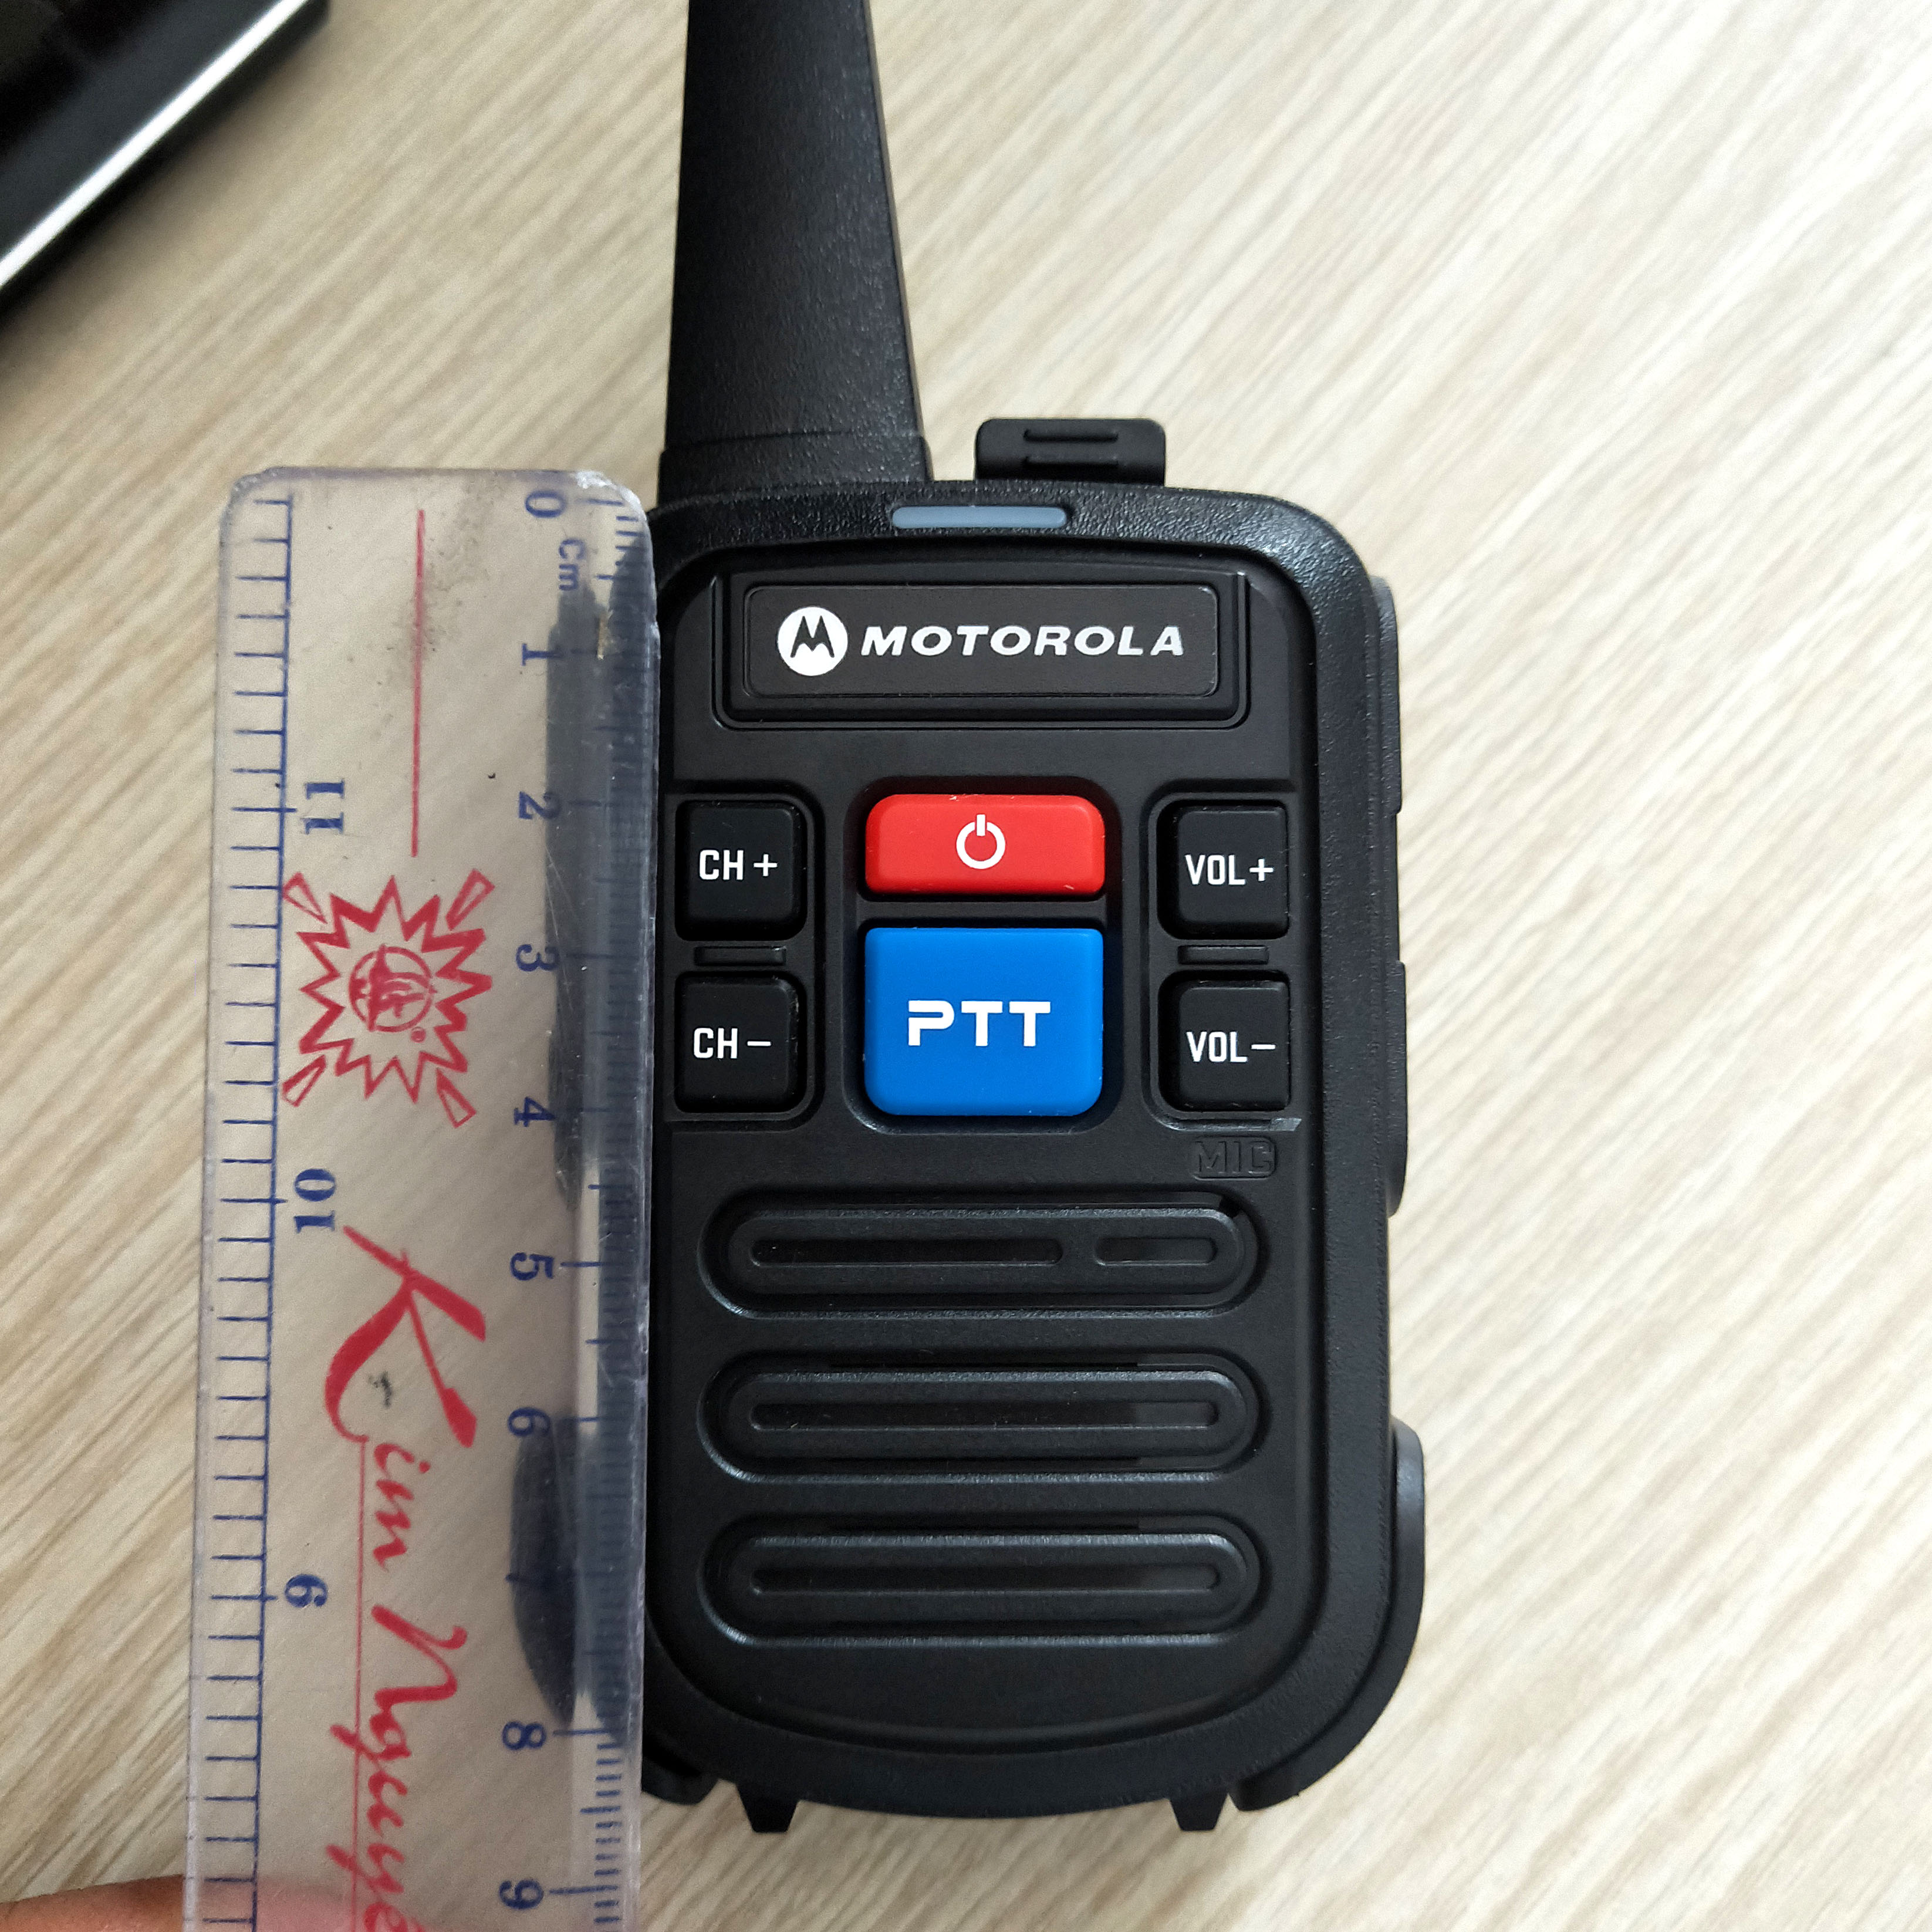 Bộ đàm Motorola Minitor VI, bộ đàm mini cầm tay nhỏ gọn - Hàng nhập khẩu